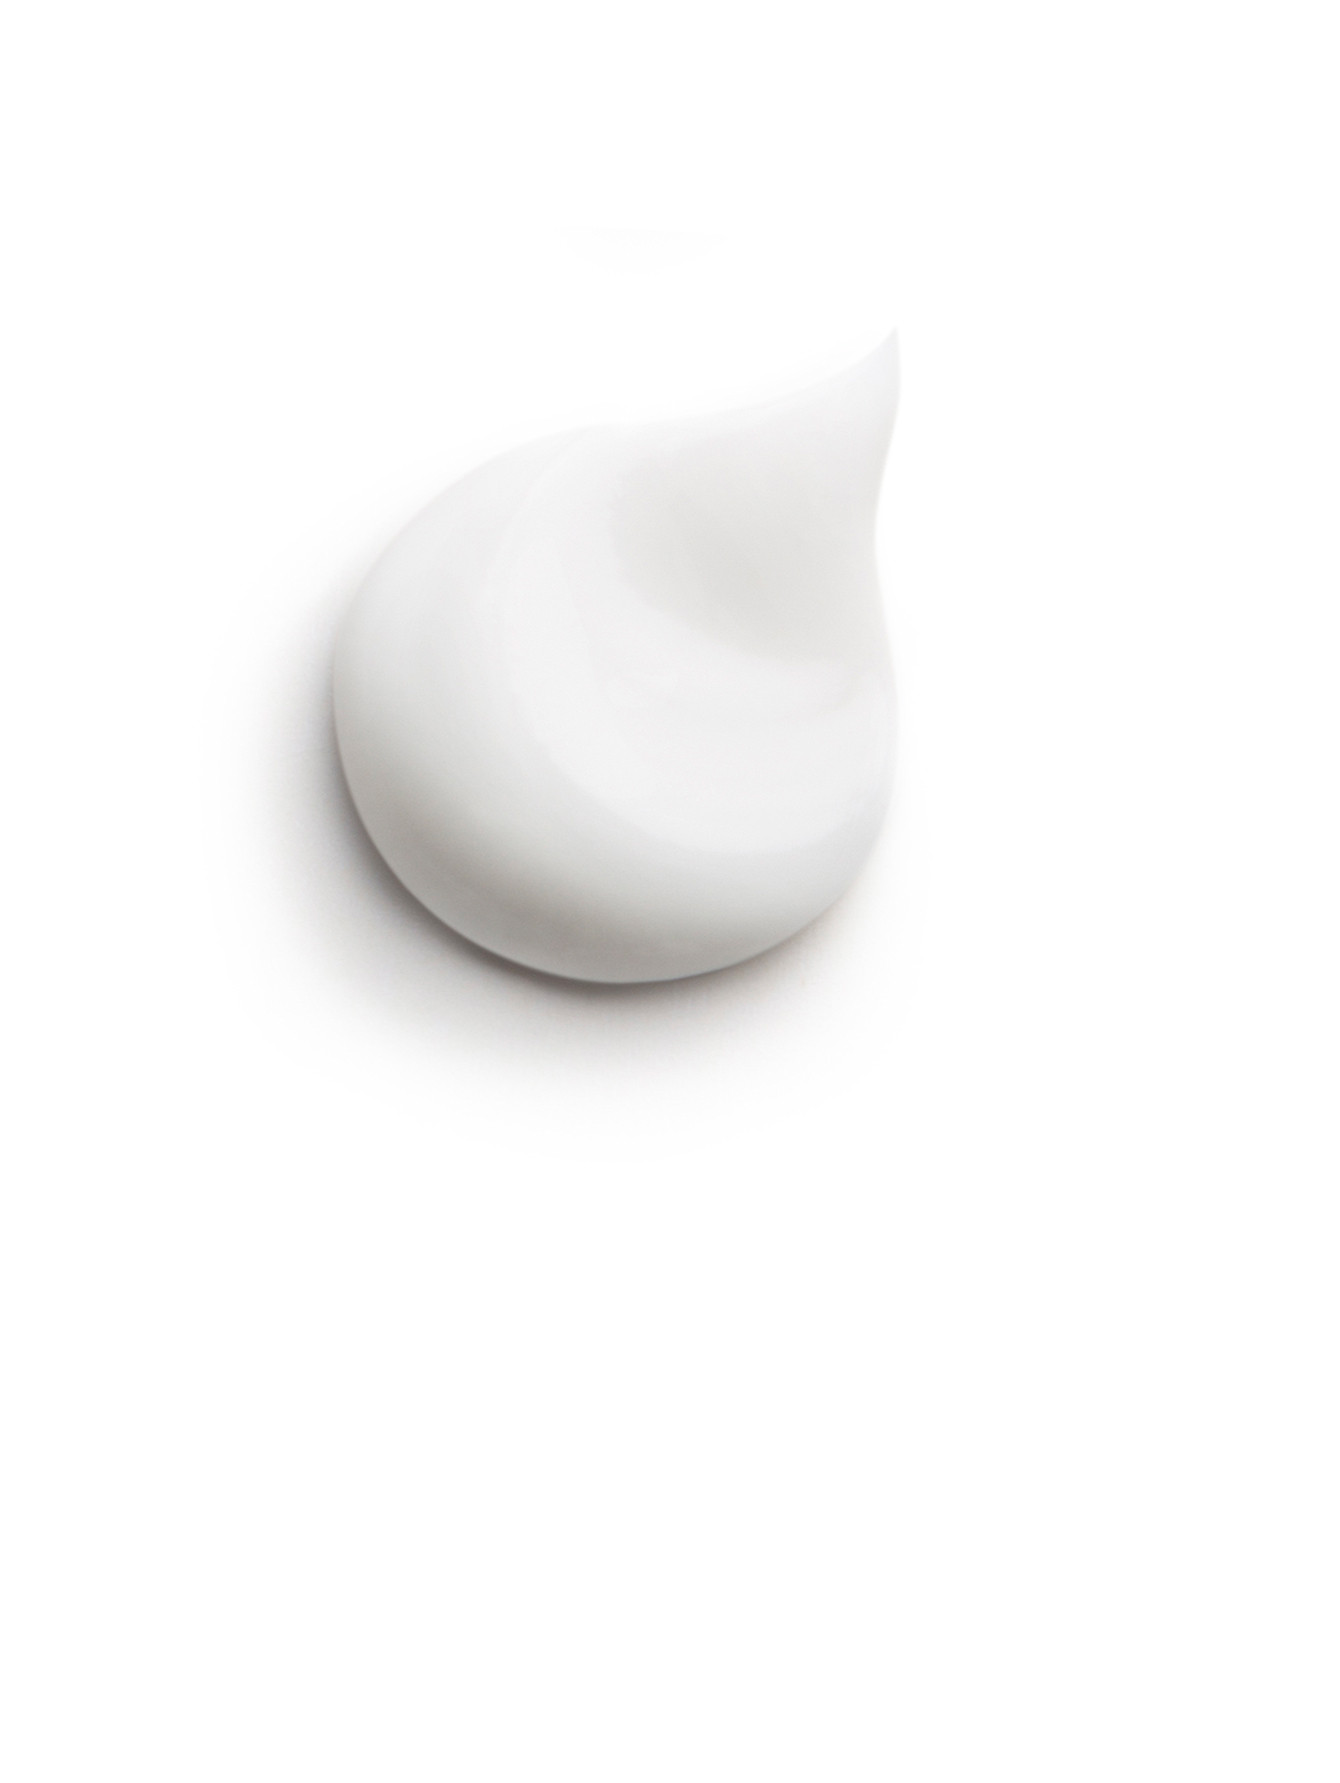 Крем восстанавливающий - Restorative facial cream, 40ml - Обтравка1